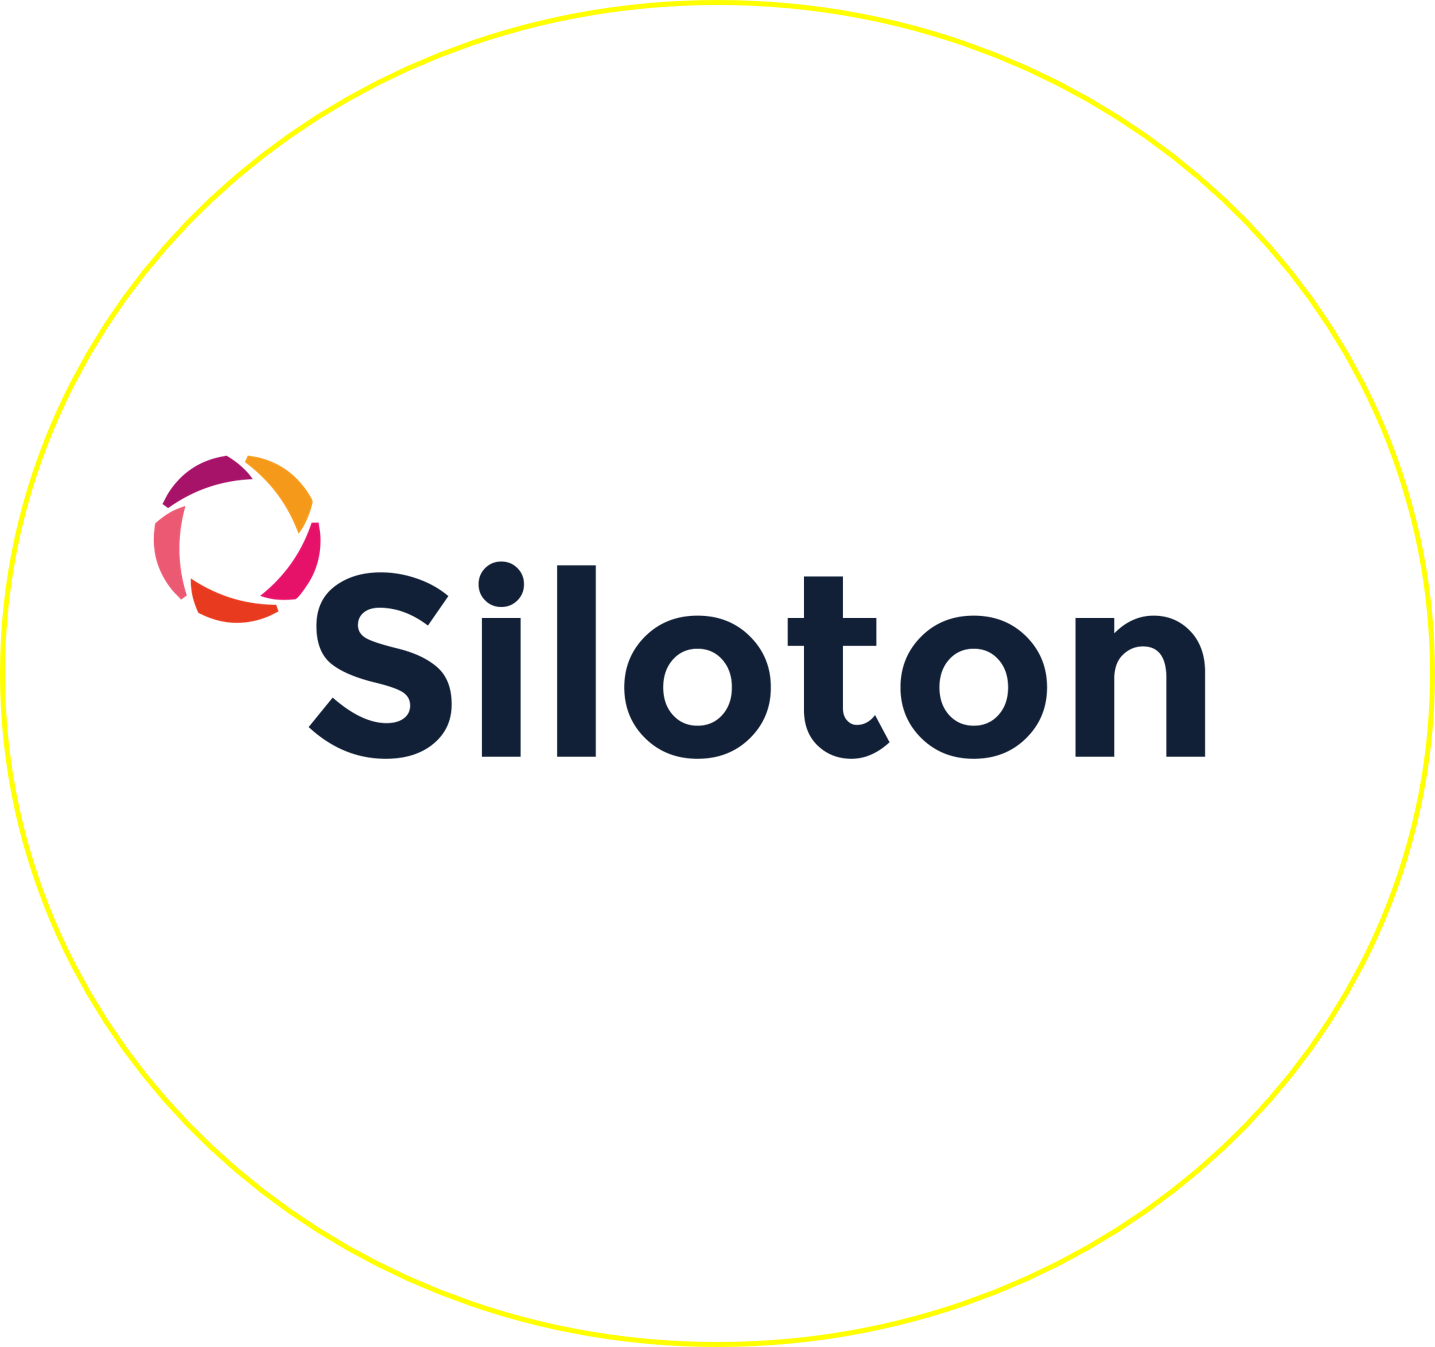 Siloton Circle